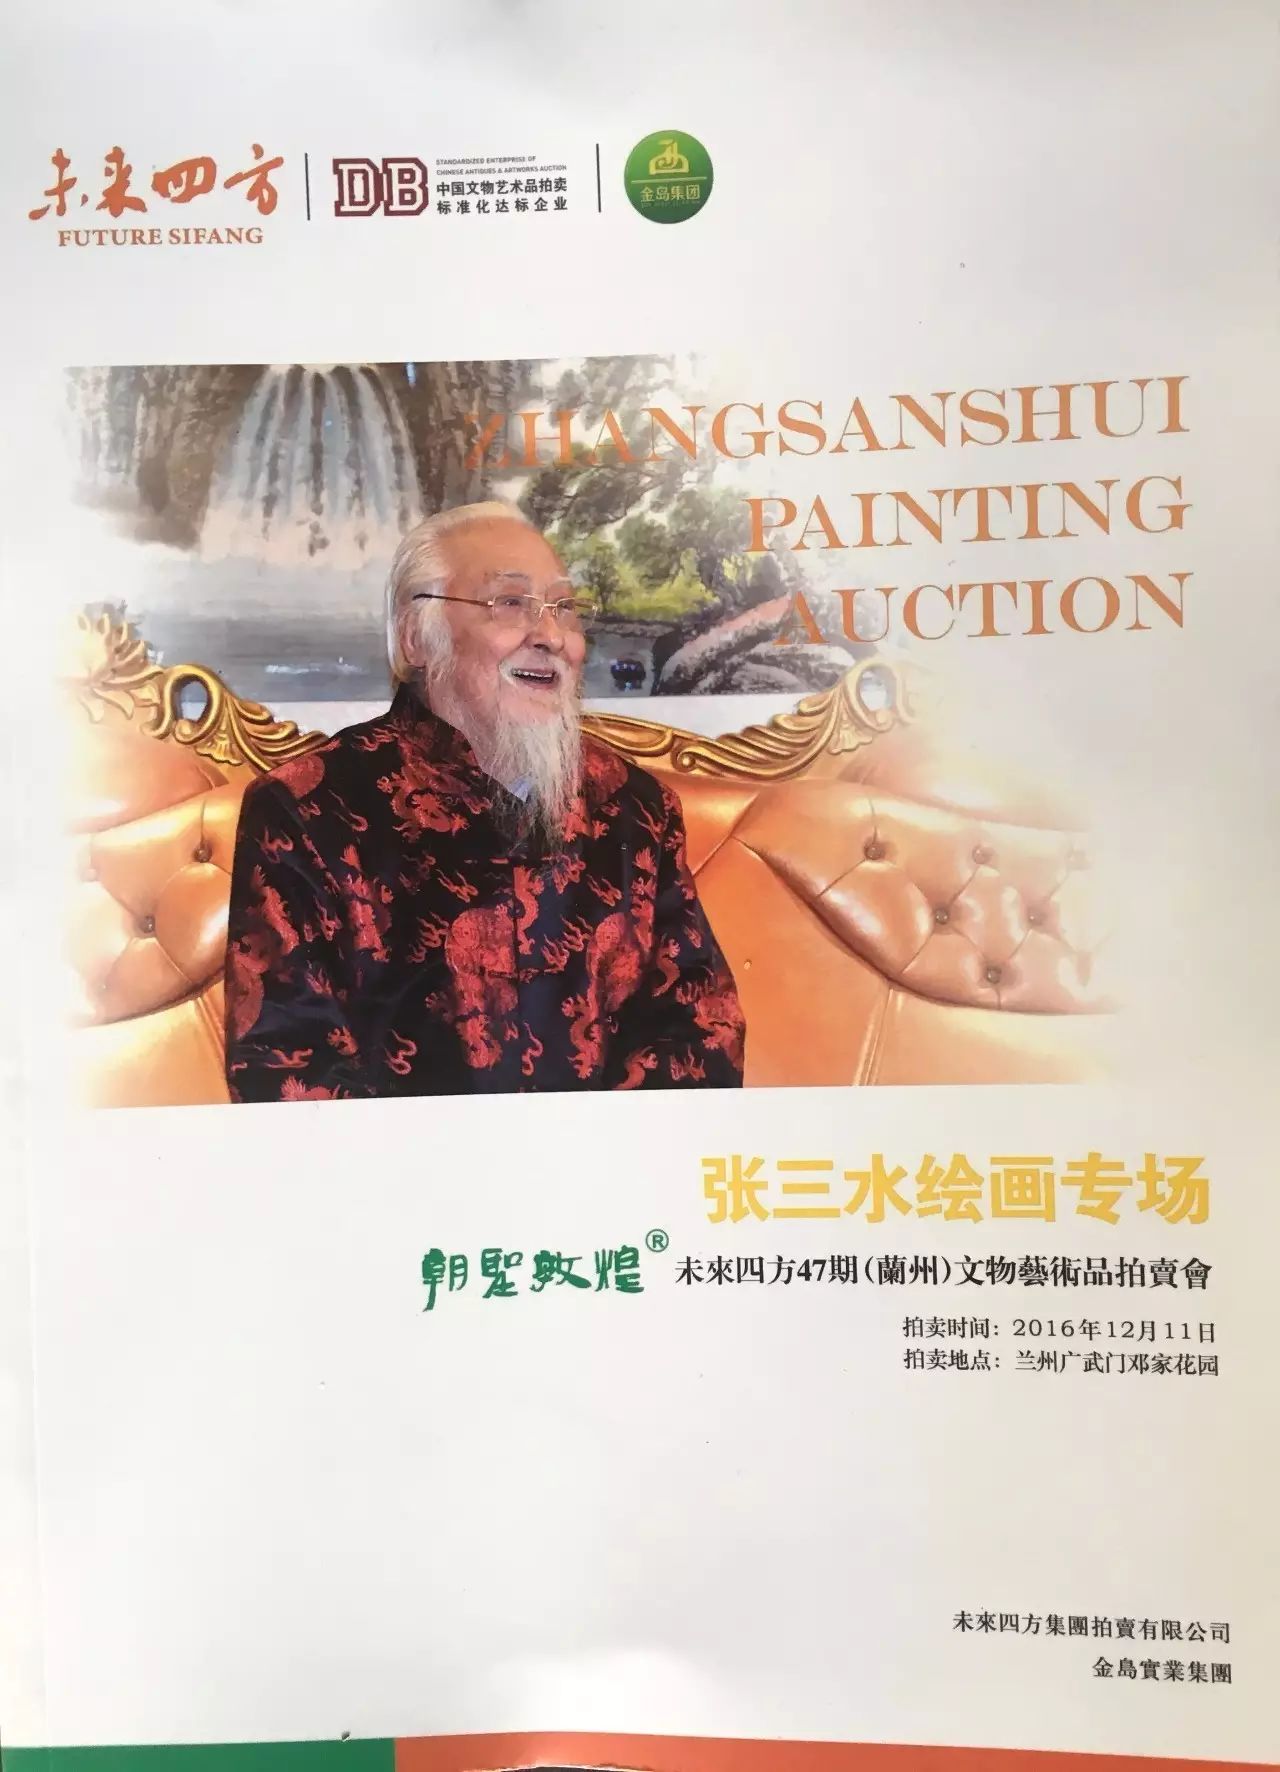 张三水绘画专场共推出40幅作品,其作品颇有大千遗风,名山大川,北国